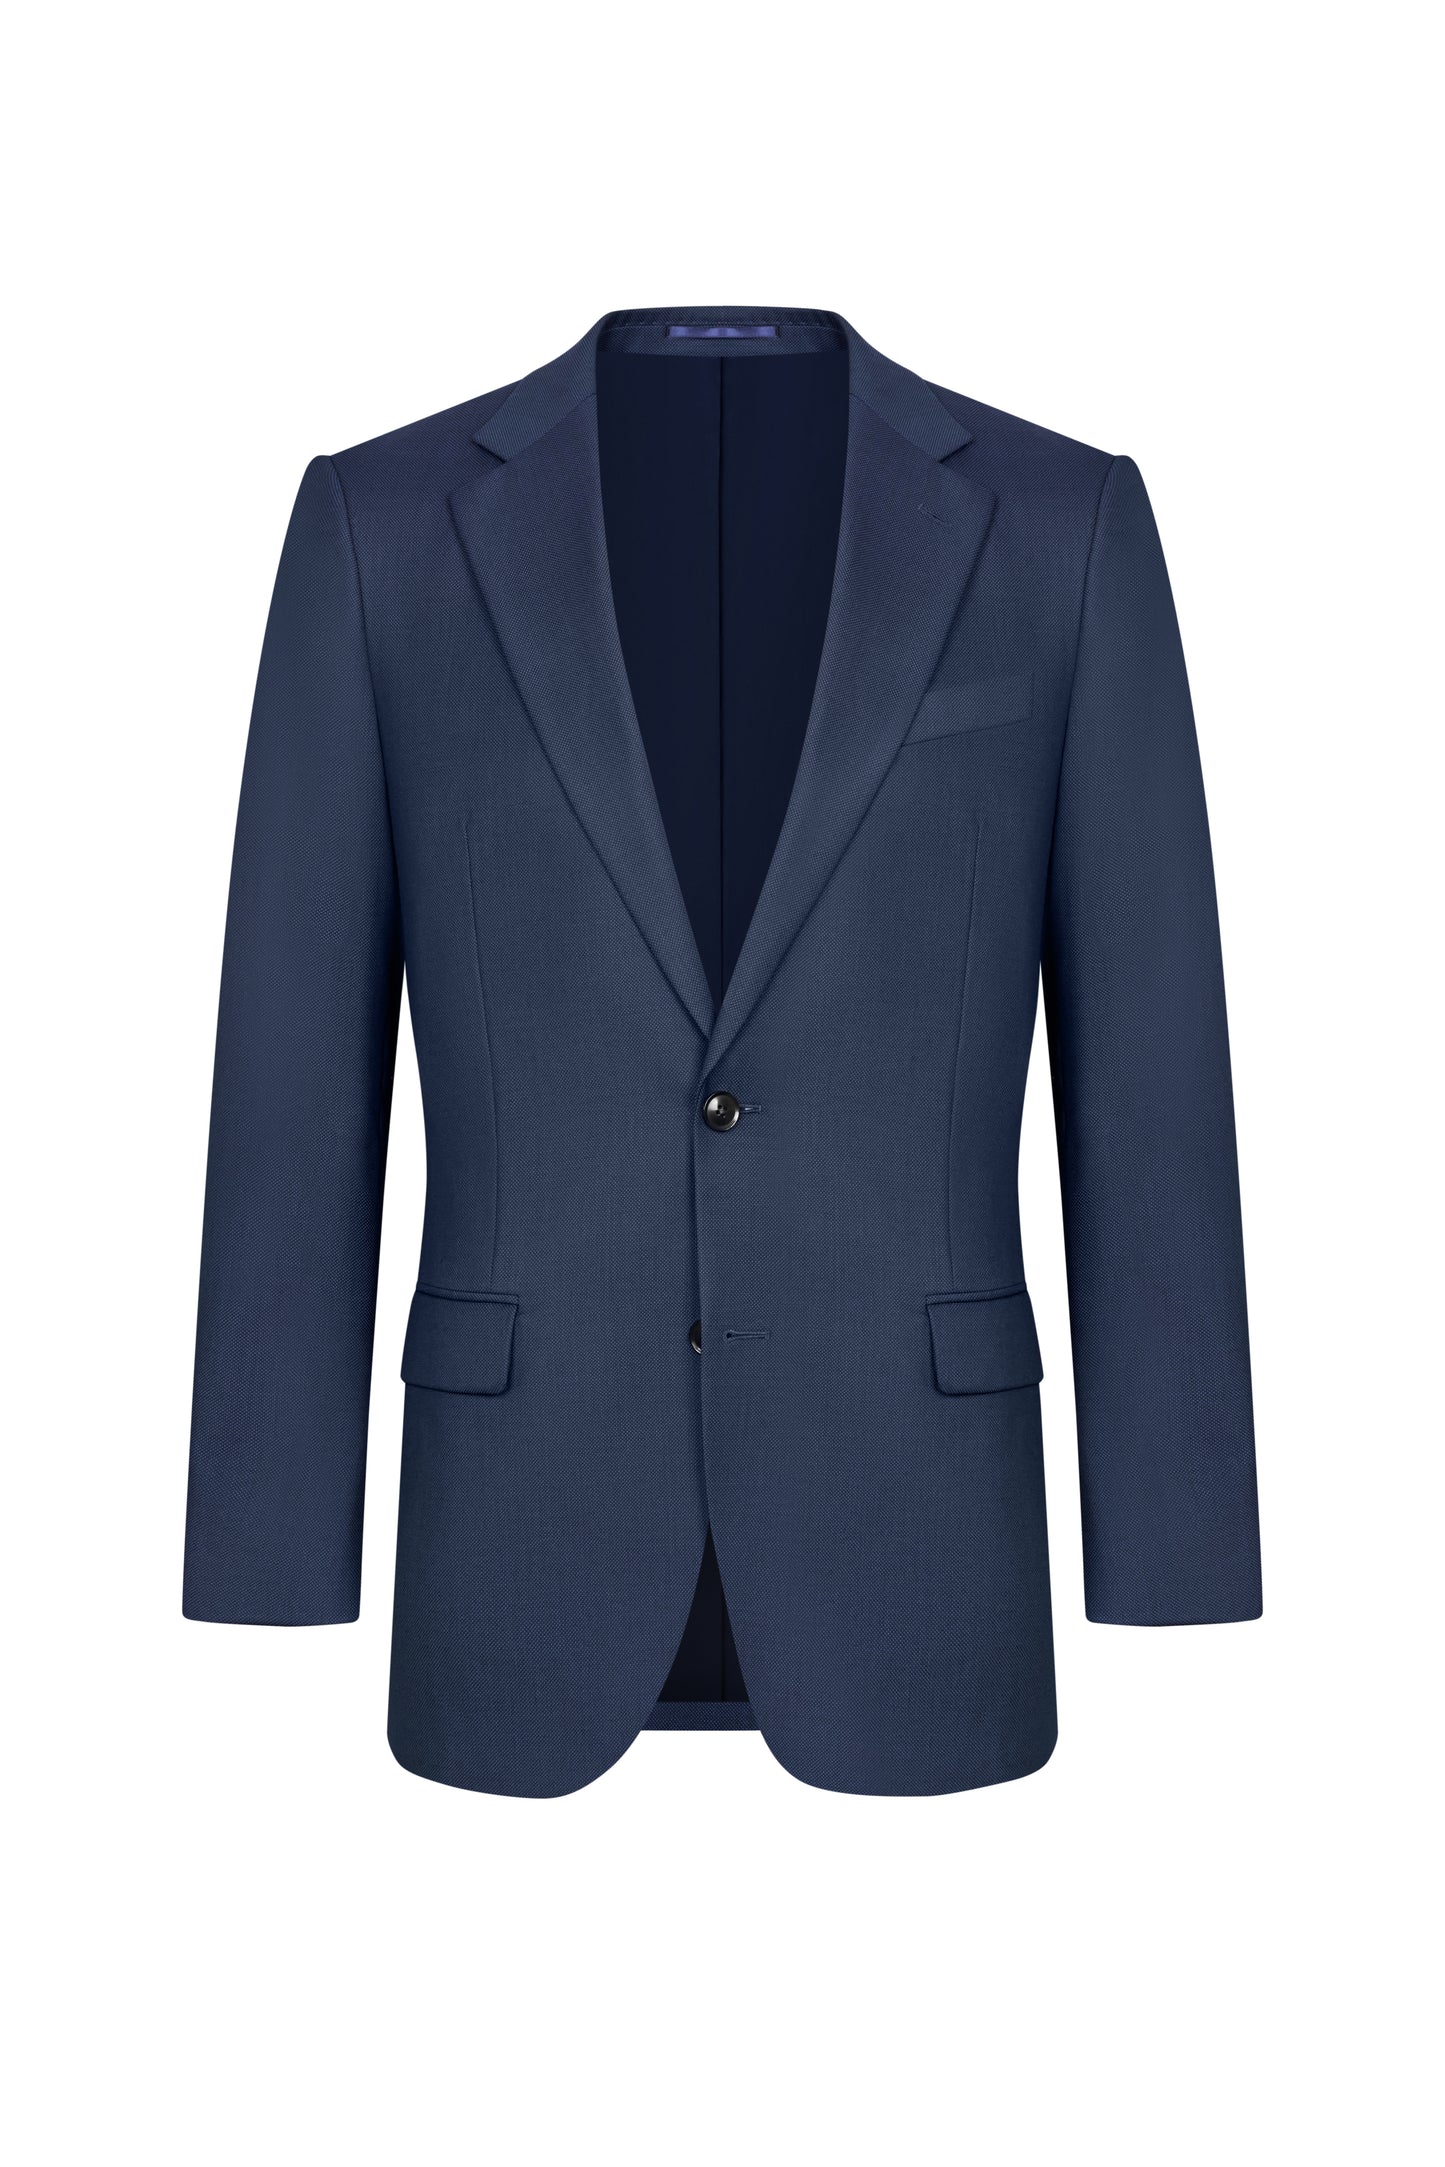 Navy Blue Birdseye Custom Suit